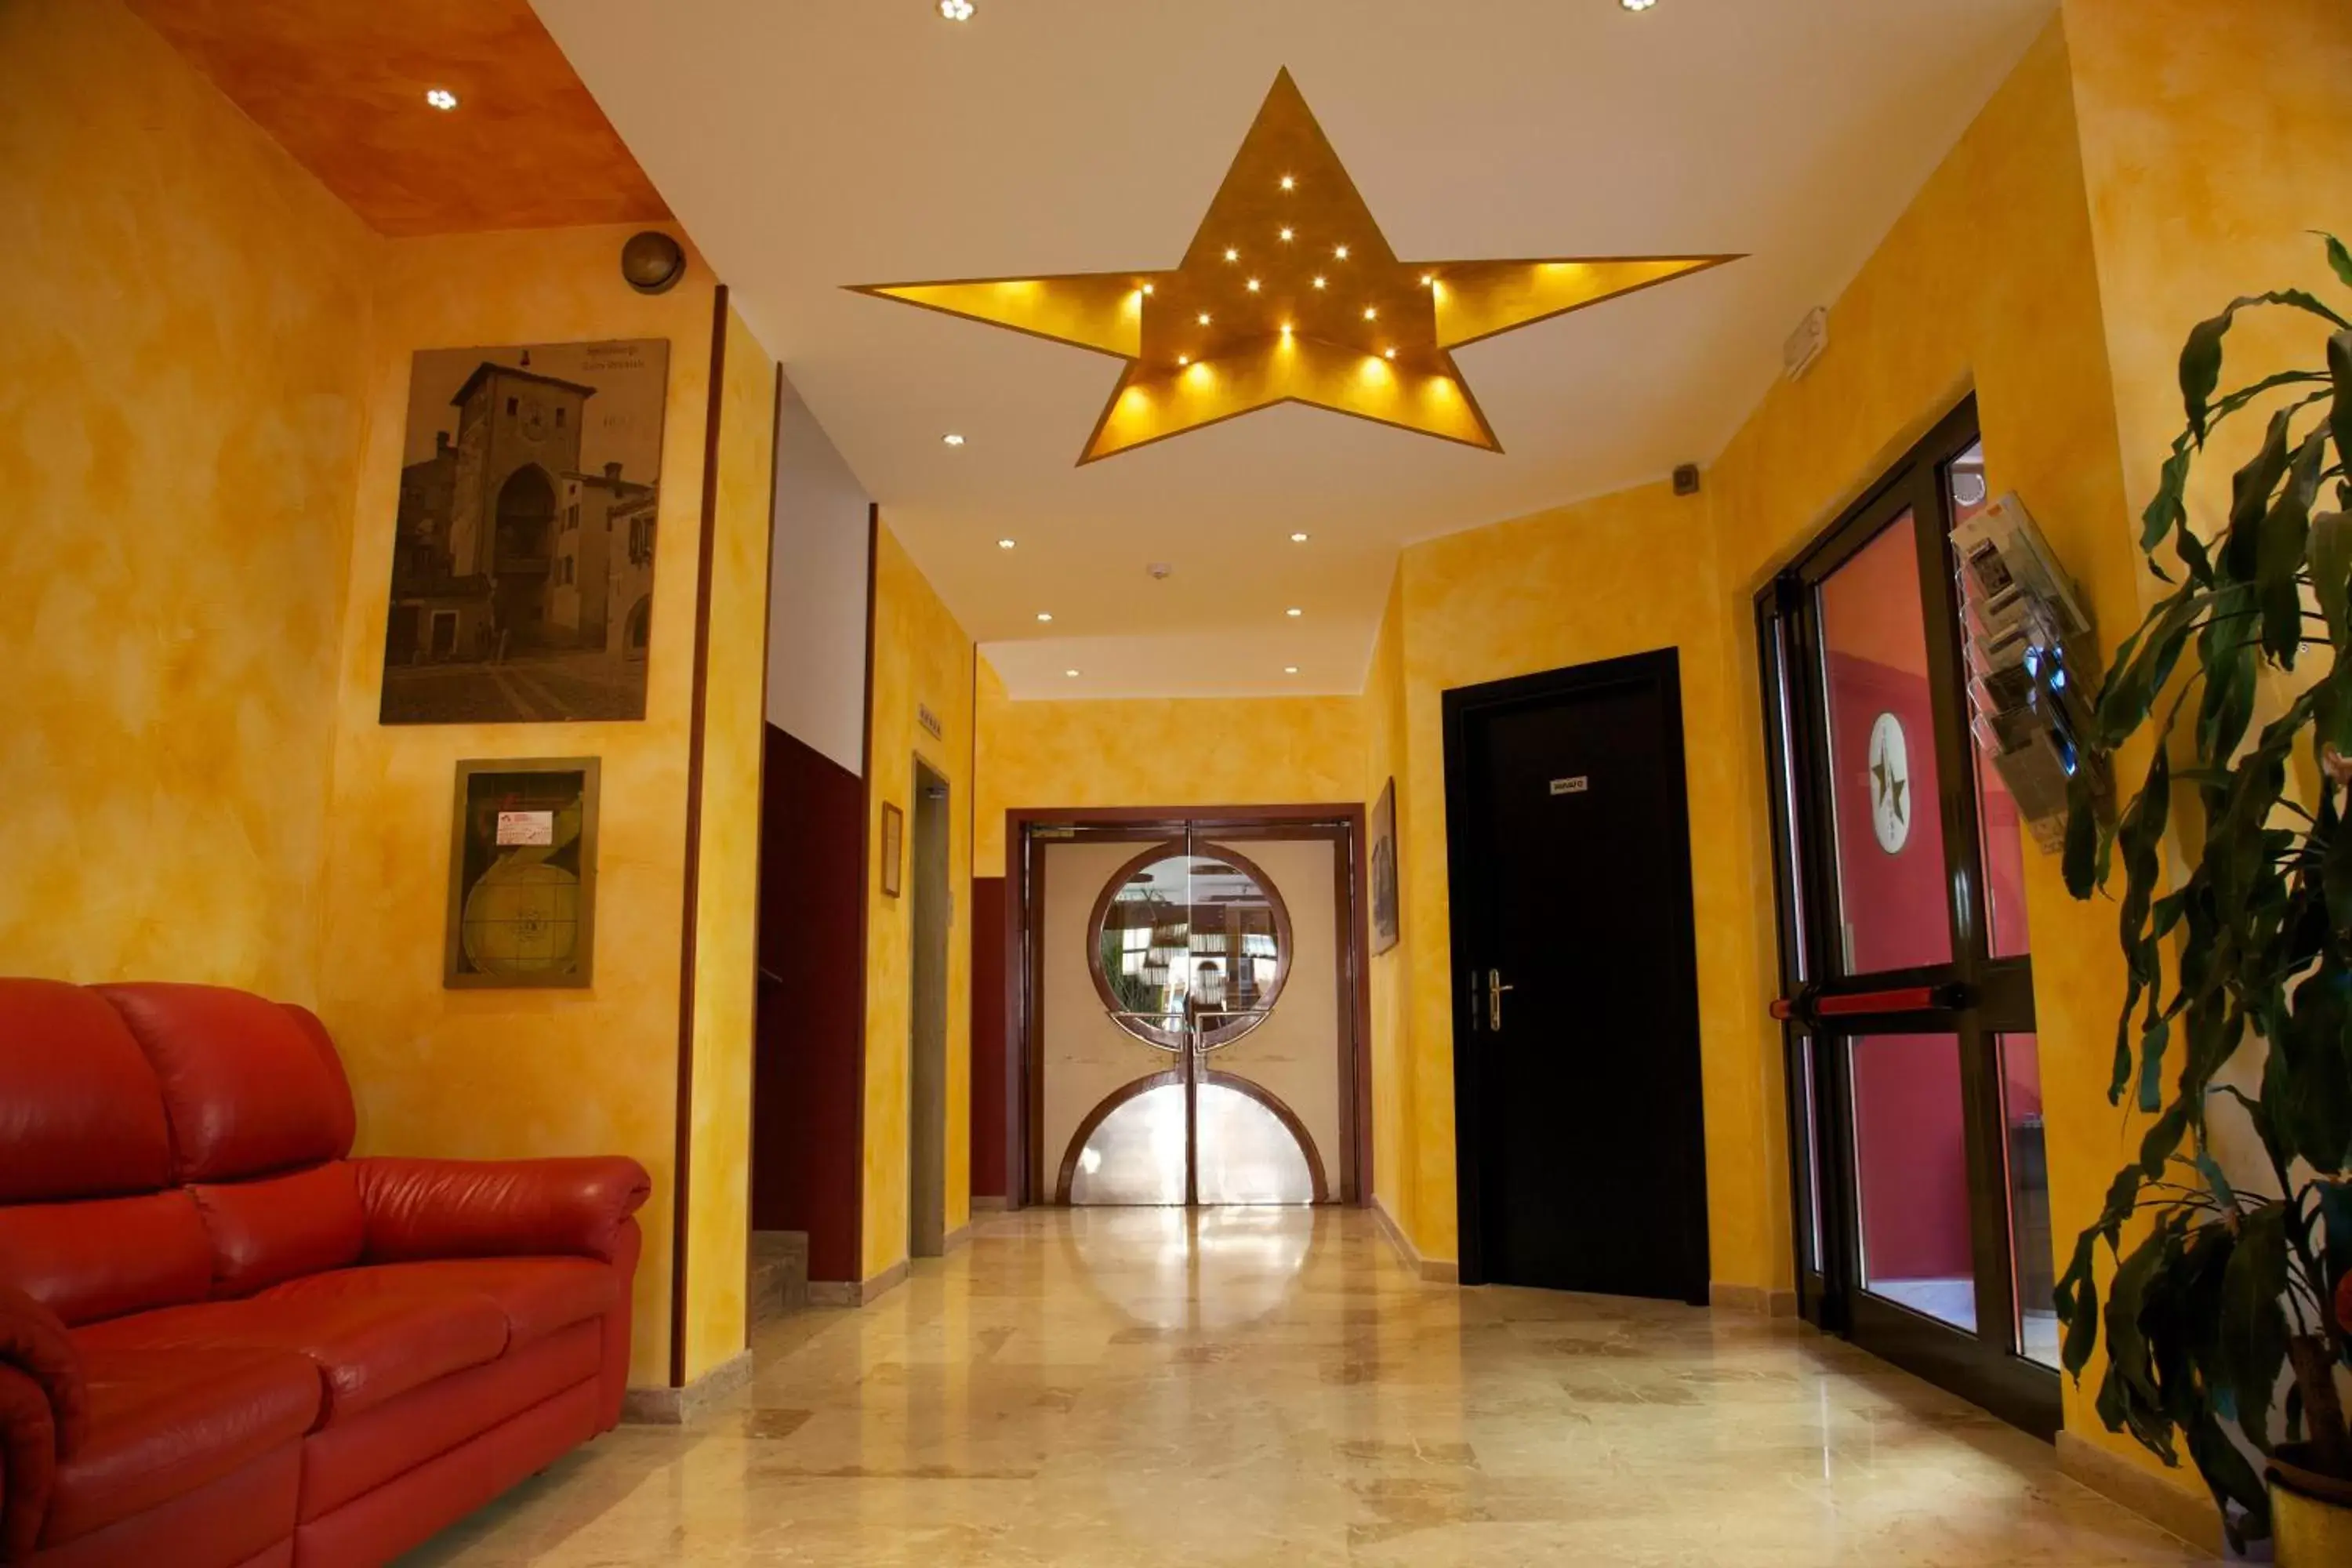 Lobby or reception, Lobby/Reception in Hotel STELLA D'ORO